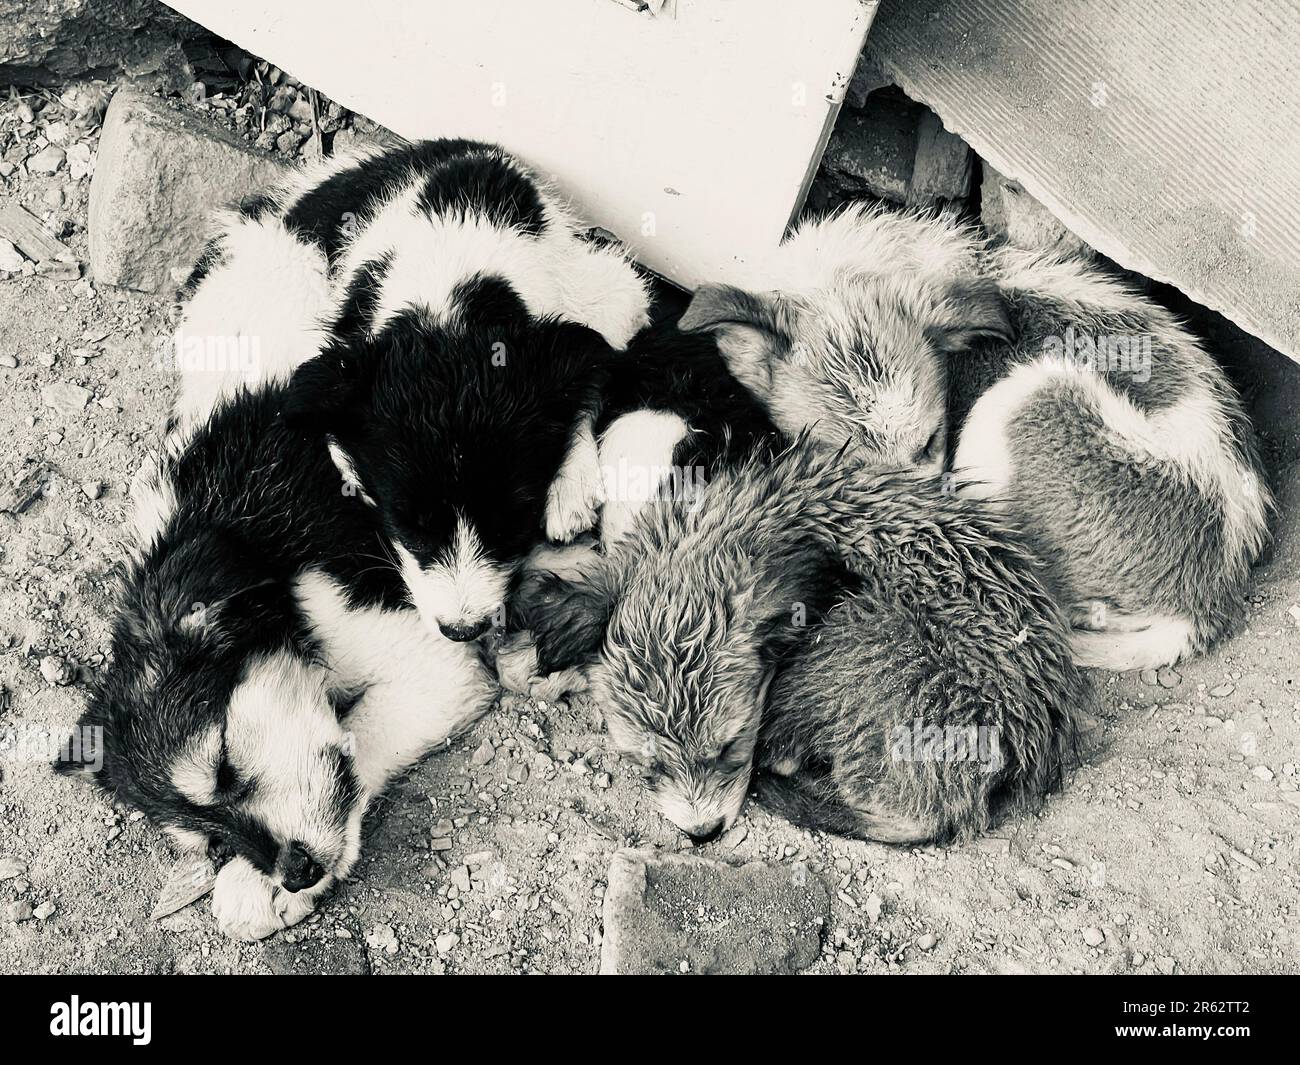 Un gruppo di cinque gatti riuniti, dormendo tranquillamente in un luogo accogliente sotto una recinzione di metallo grigio, situata su una superficie di cemento Foto Stock